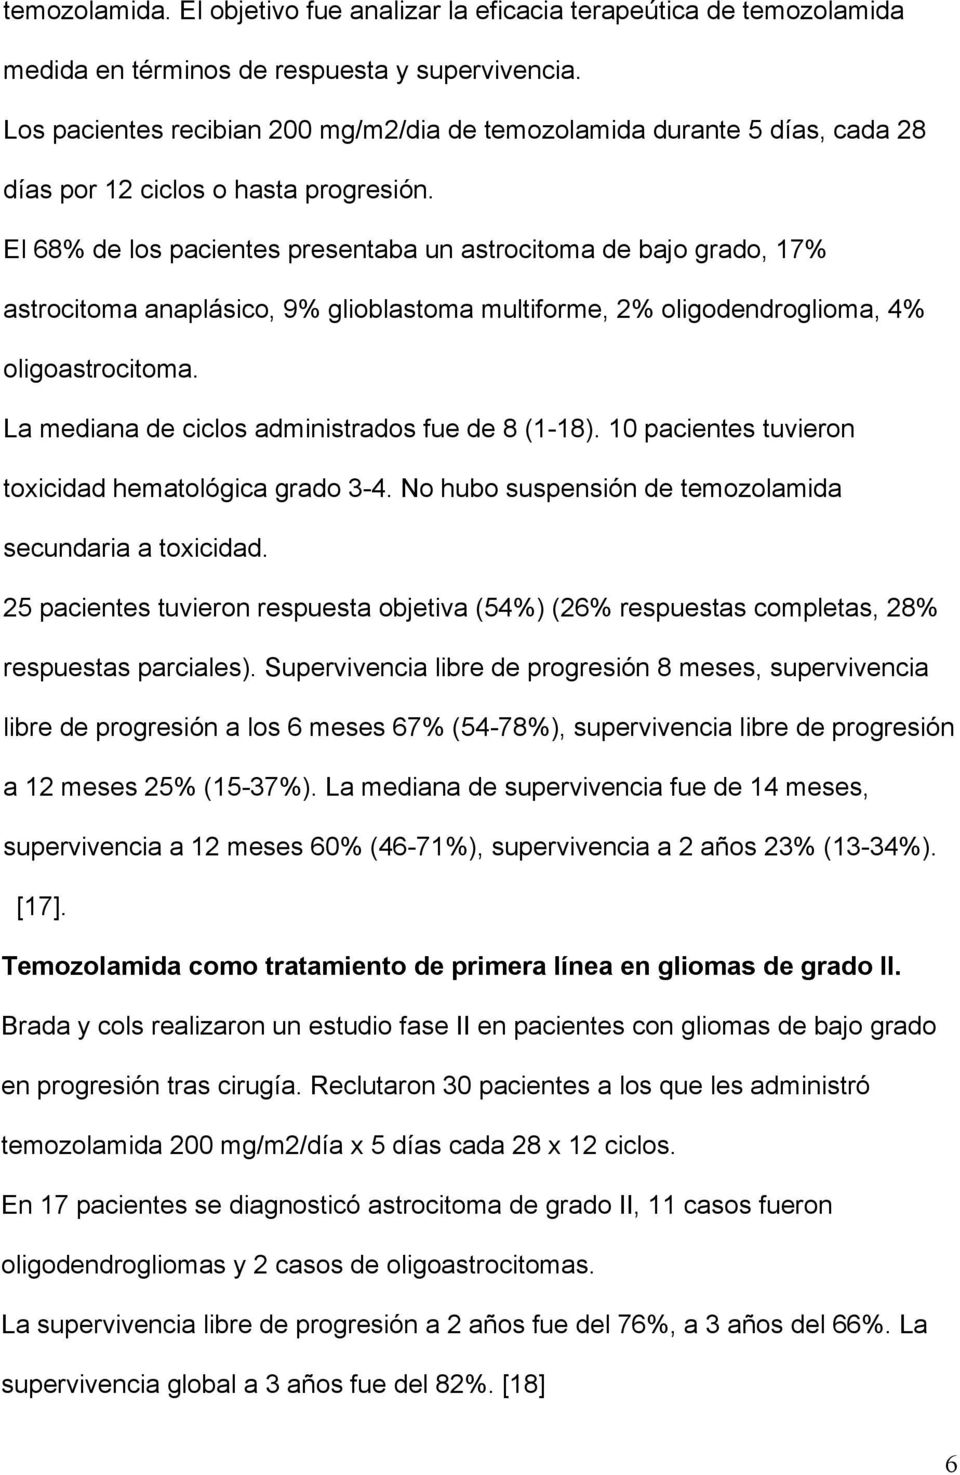 El 68% de los pacientes presentaba un astrocitoma de bajo grado, 17% astrocitoma anaplásico, 9% glioblastoma multiforme, 2% oligodendroglioma, 4% oligoastrocitoma.